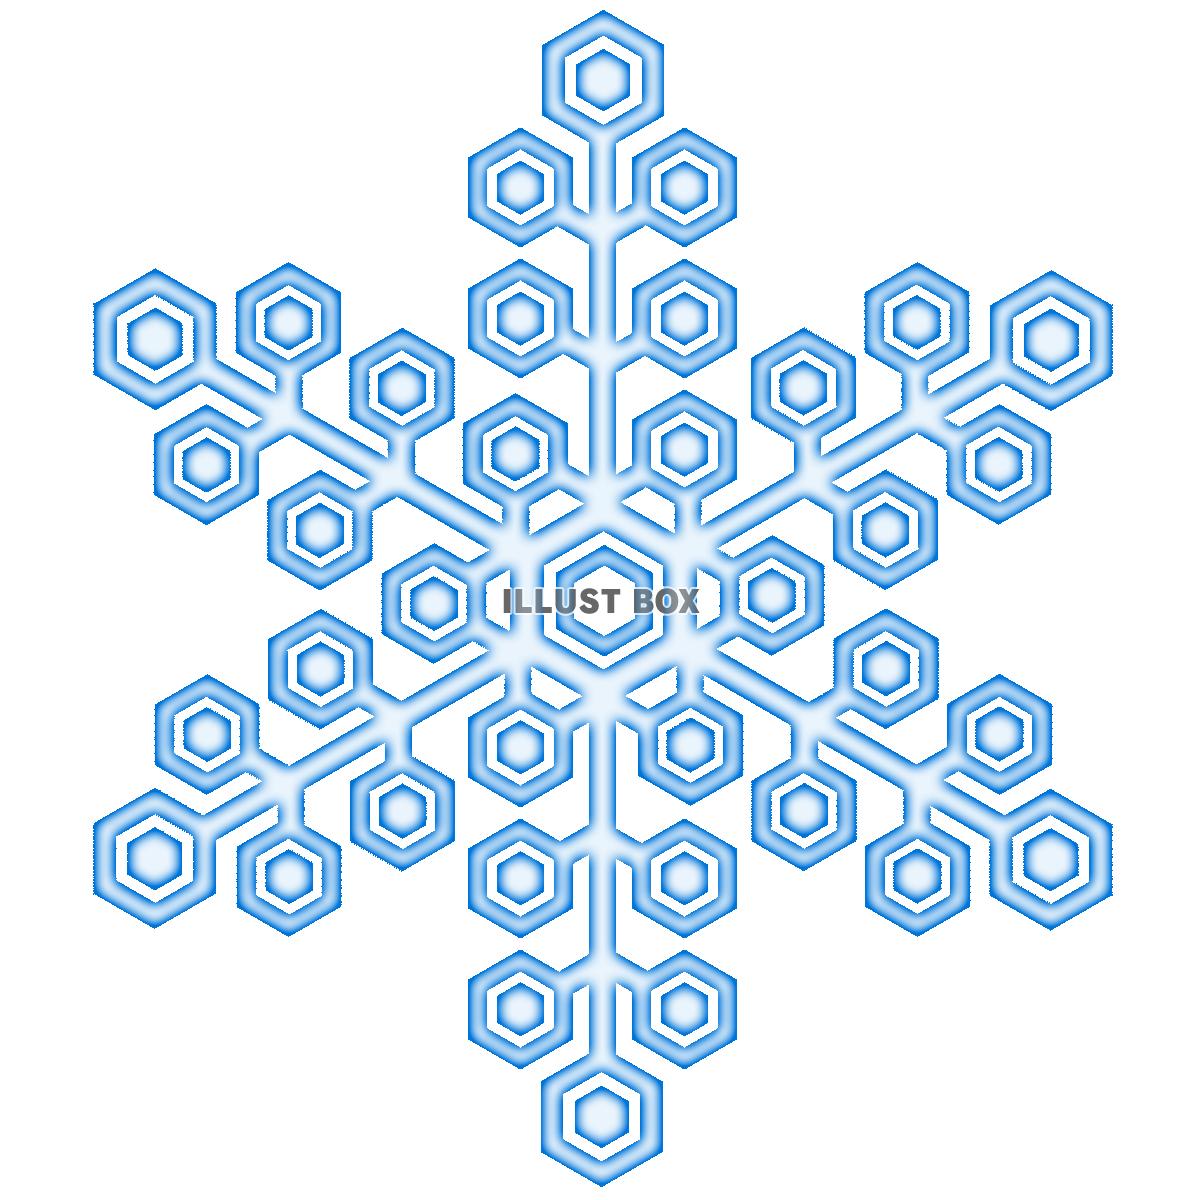 雪の結晶アイコンシンプル背景素材イラスト透過png